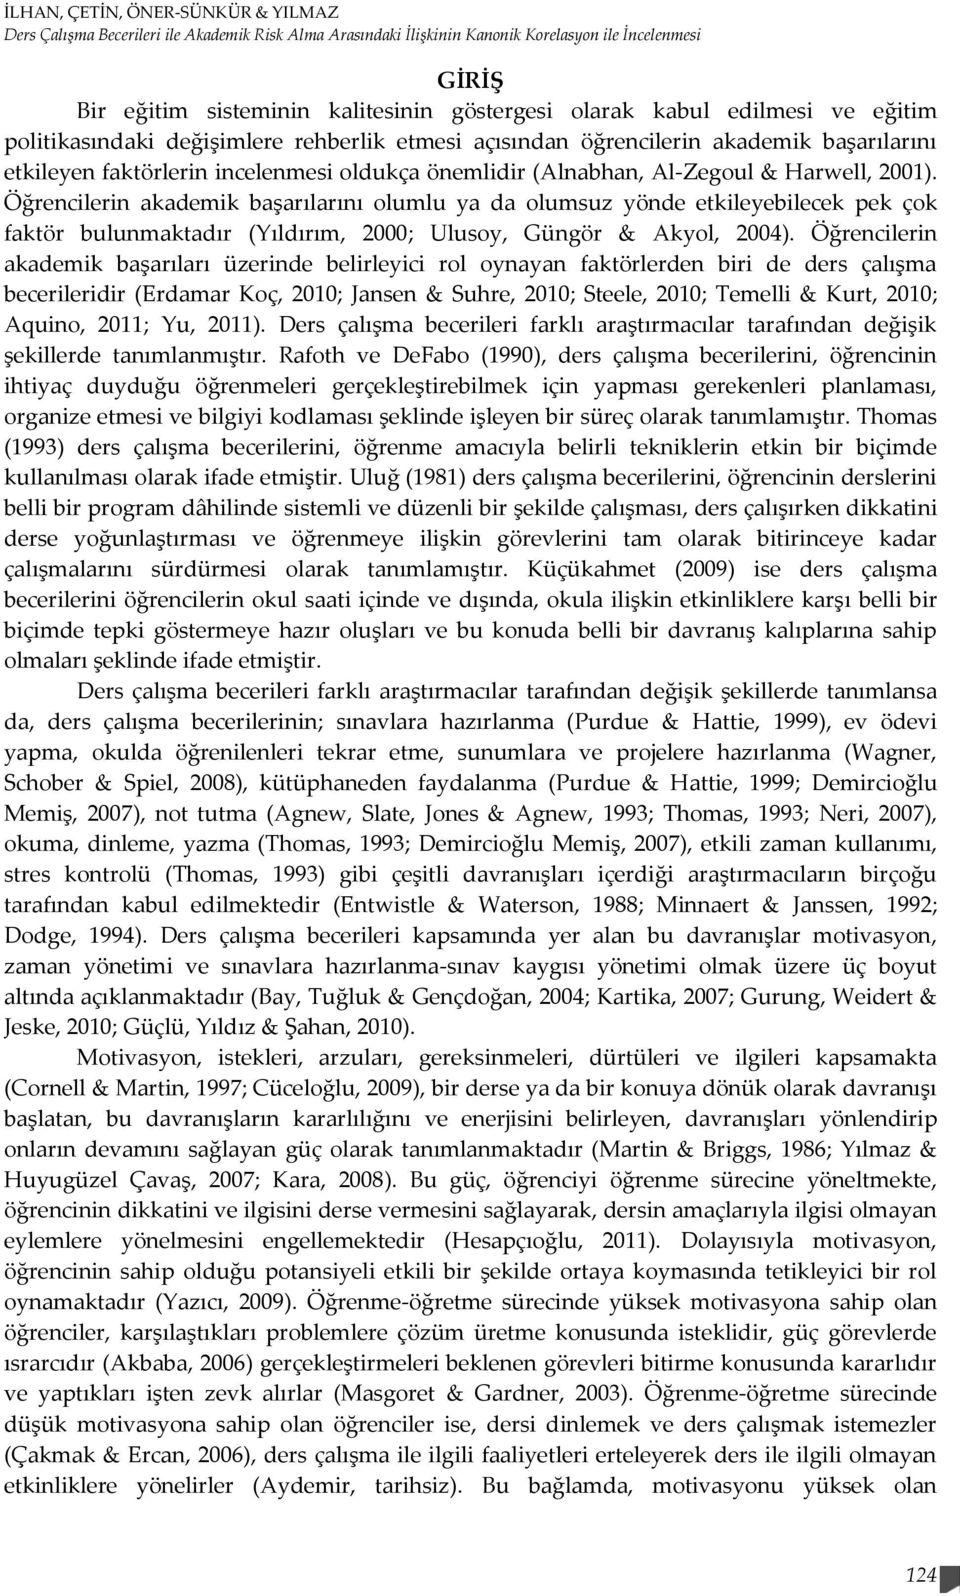 2001). Öğrencilerin akademik başarılarını olumlu ya da olumsuz yönde etkileyebilecek pek çok faktör bulunmaktadır (Yıldırım, 2000; Ulusoy, Güngör & Akyol, 2004).